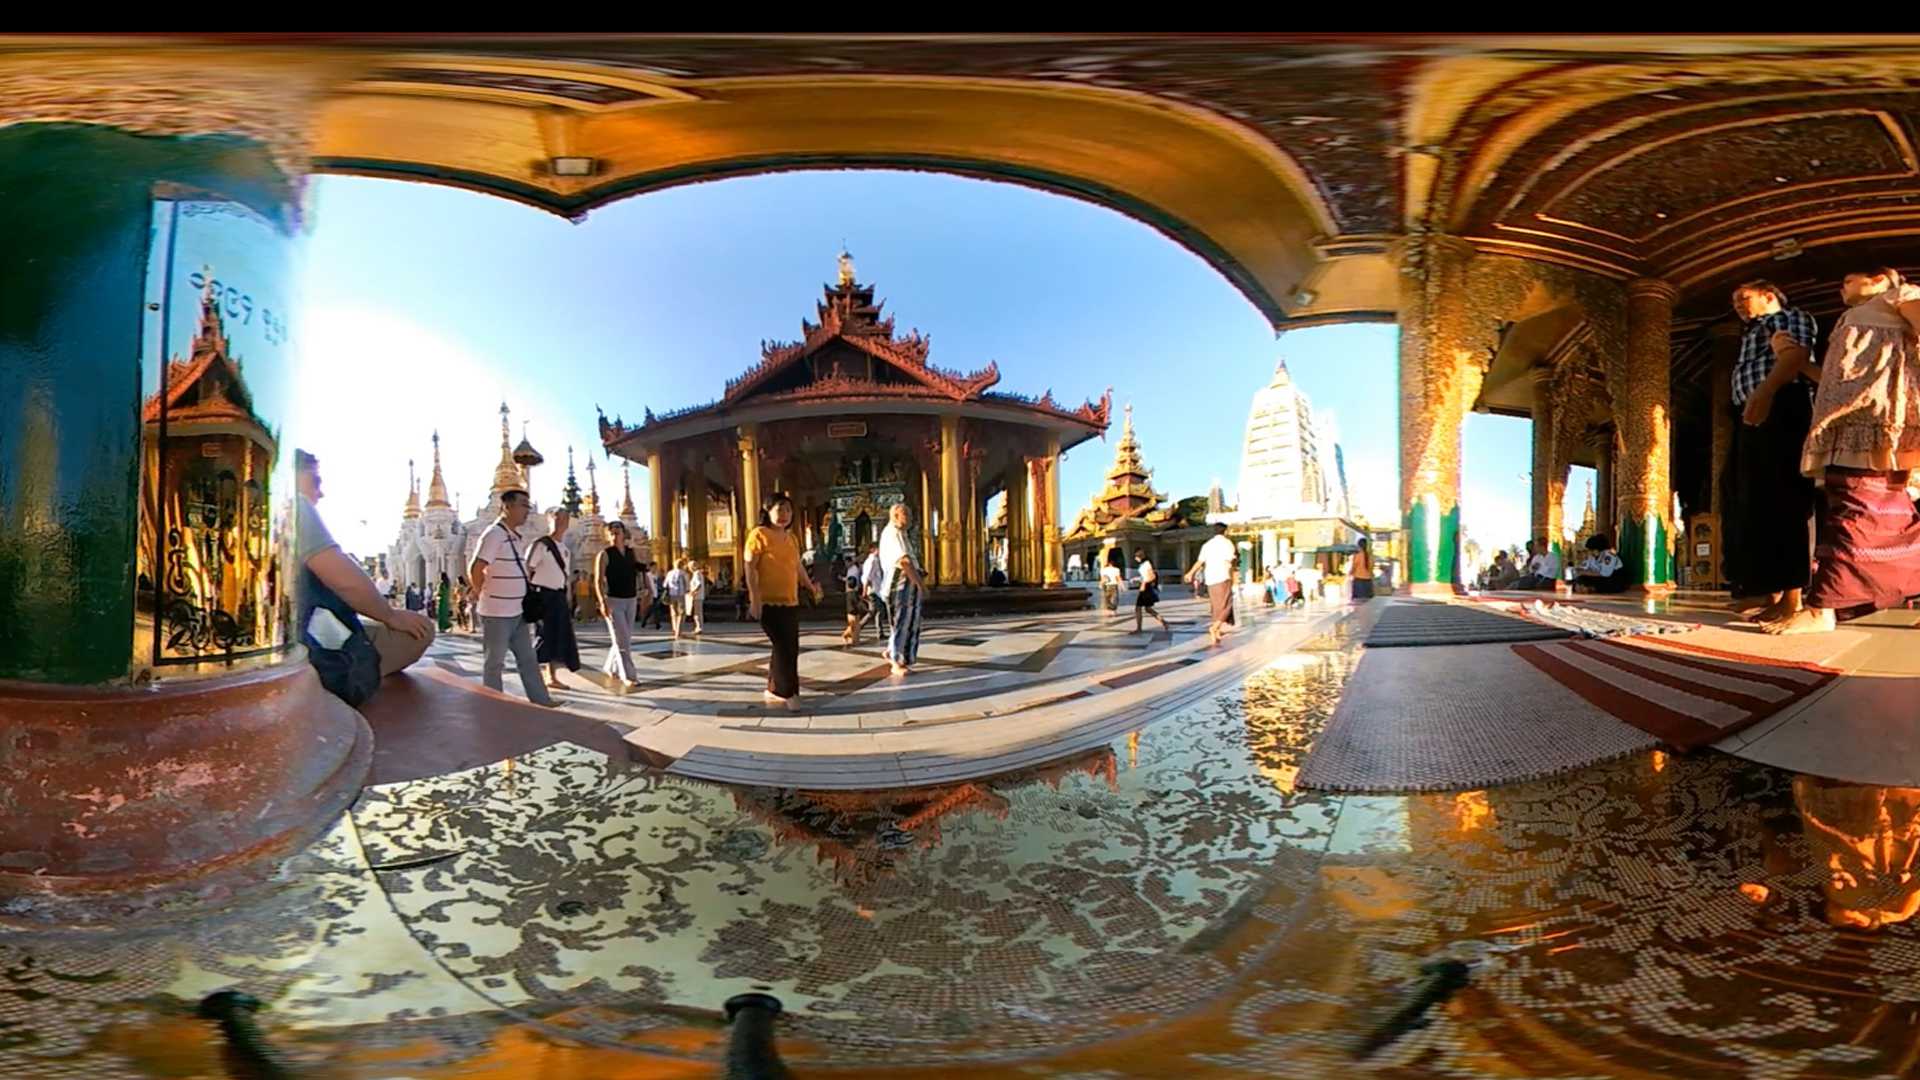 Shwedagon Pagoda 360 (Burma)